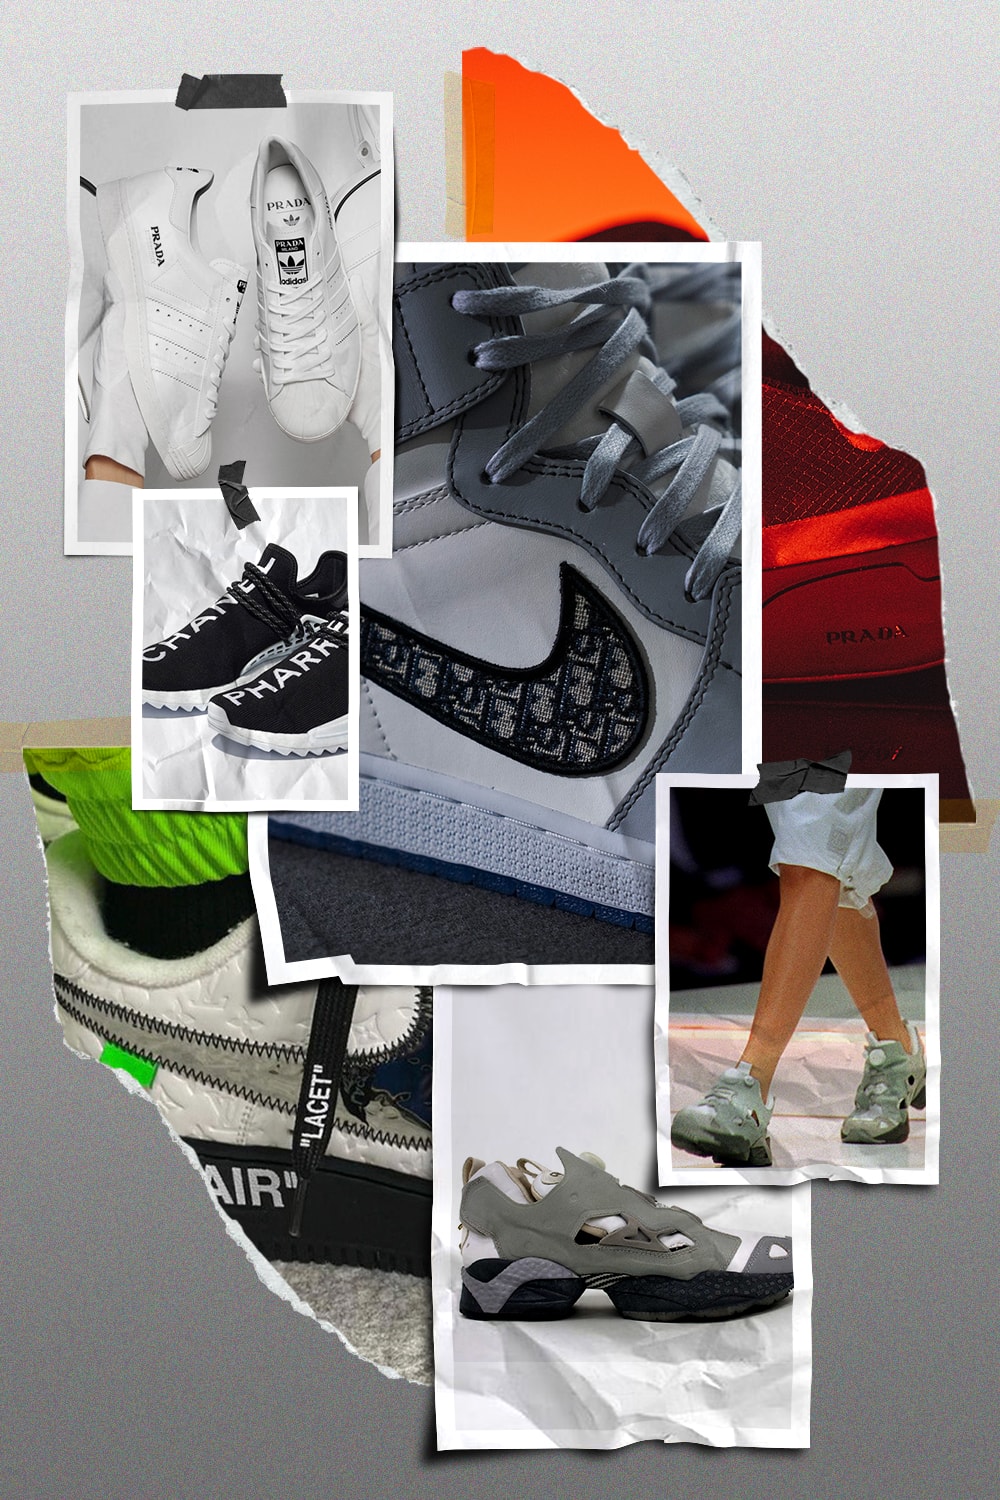 从「借鉴」到「合作」，回溯千禧年以来时装品牌与运动品牌的球鞋博弈